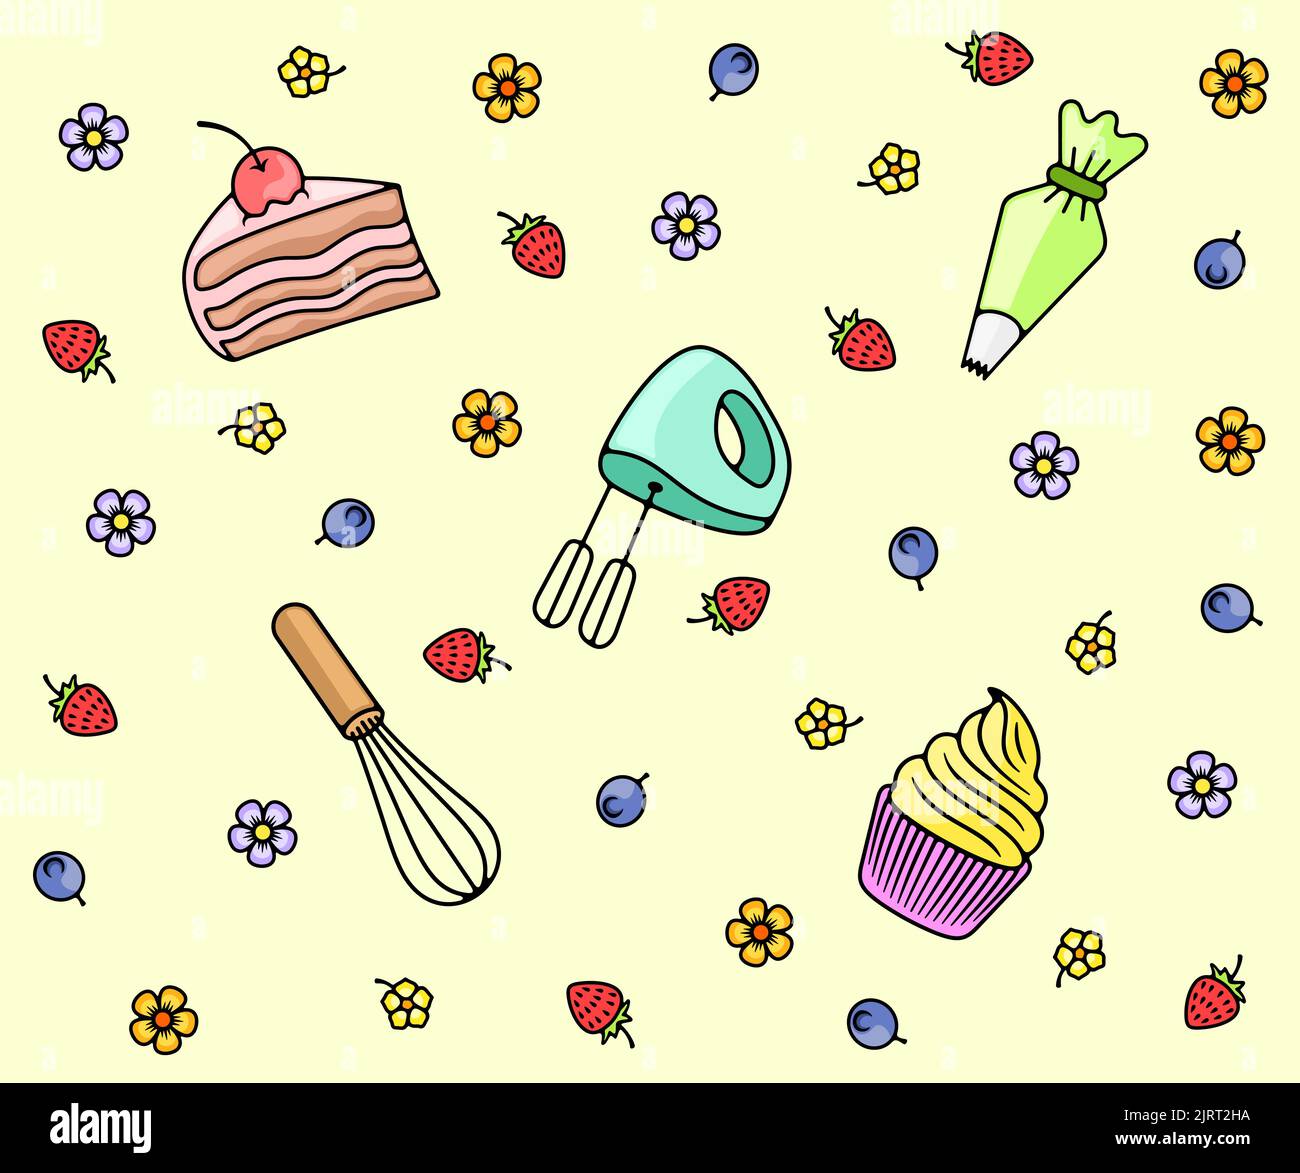 Süßwaren, Lebensmittel, Süßwaren Utensilien, nahtlose Vektor-Hintergrund, Tapete, Banner, Muster. Stück Kuchen, Cupcake, elektrischer Mixer, Schneebesen Stock Vektor